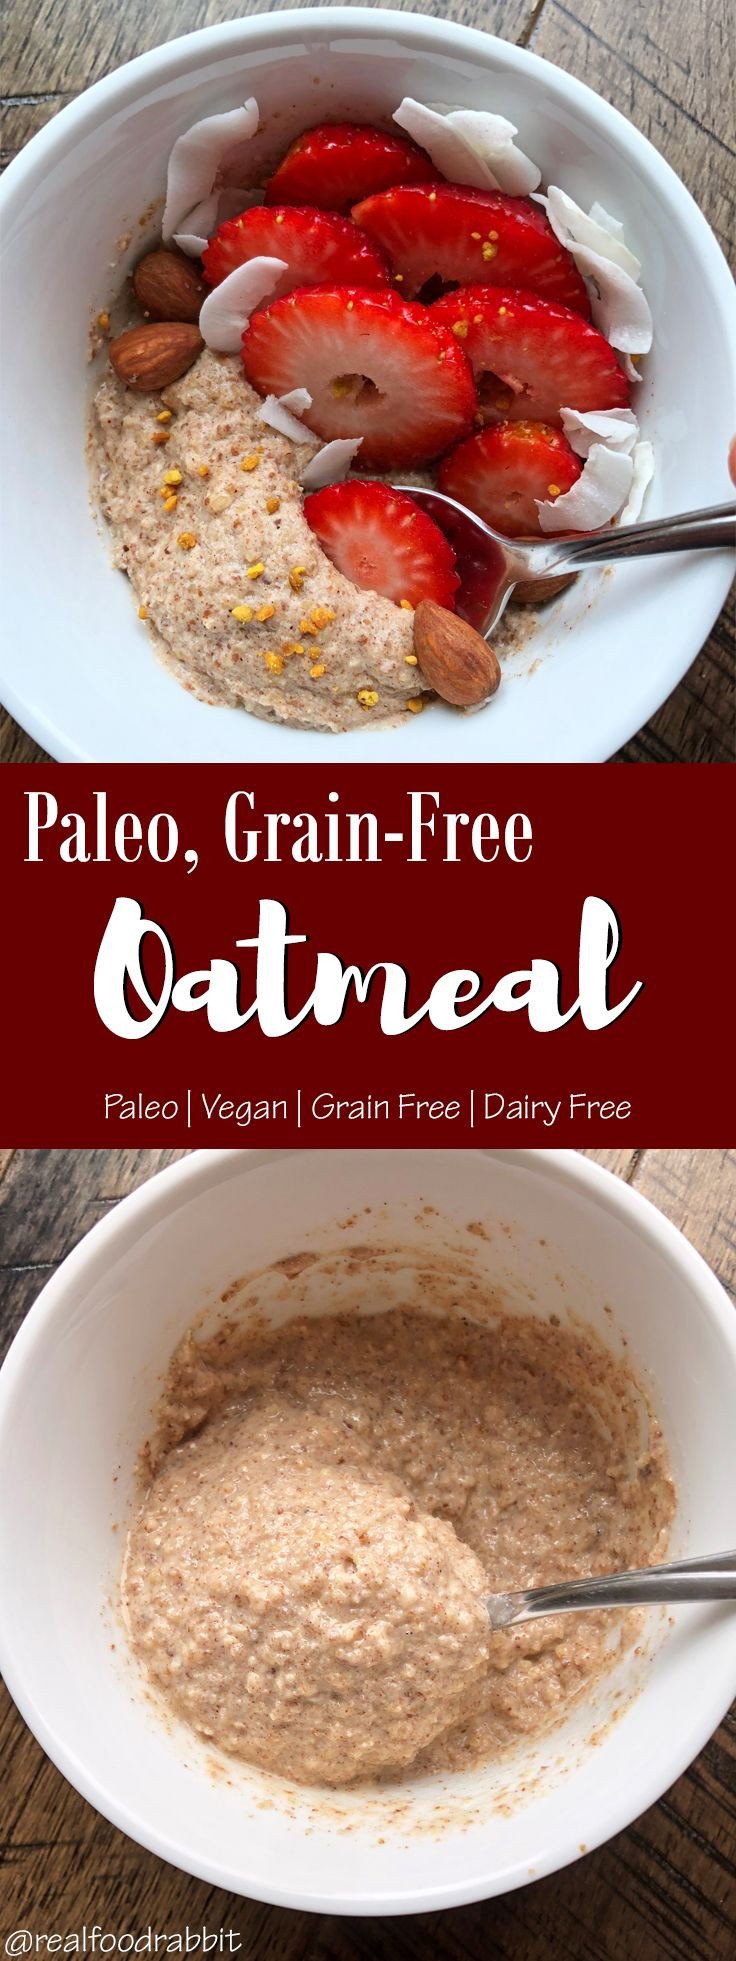 Paleo Diet Oatmeal
 Paleo Grain Free Oatmeal